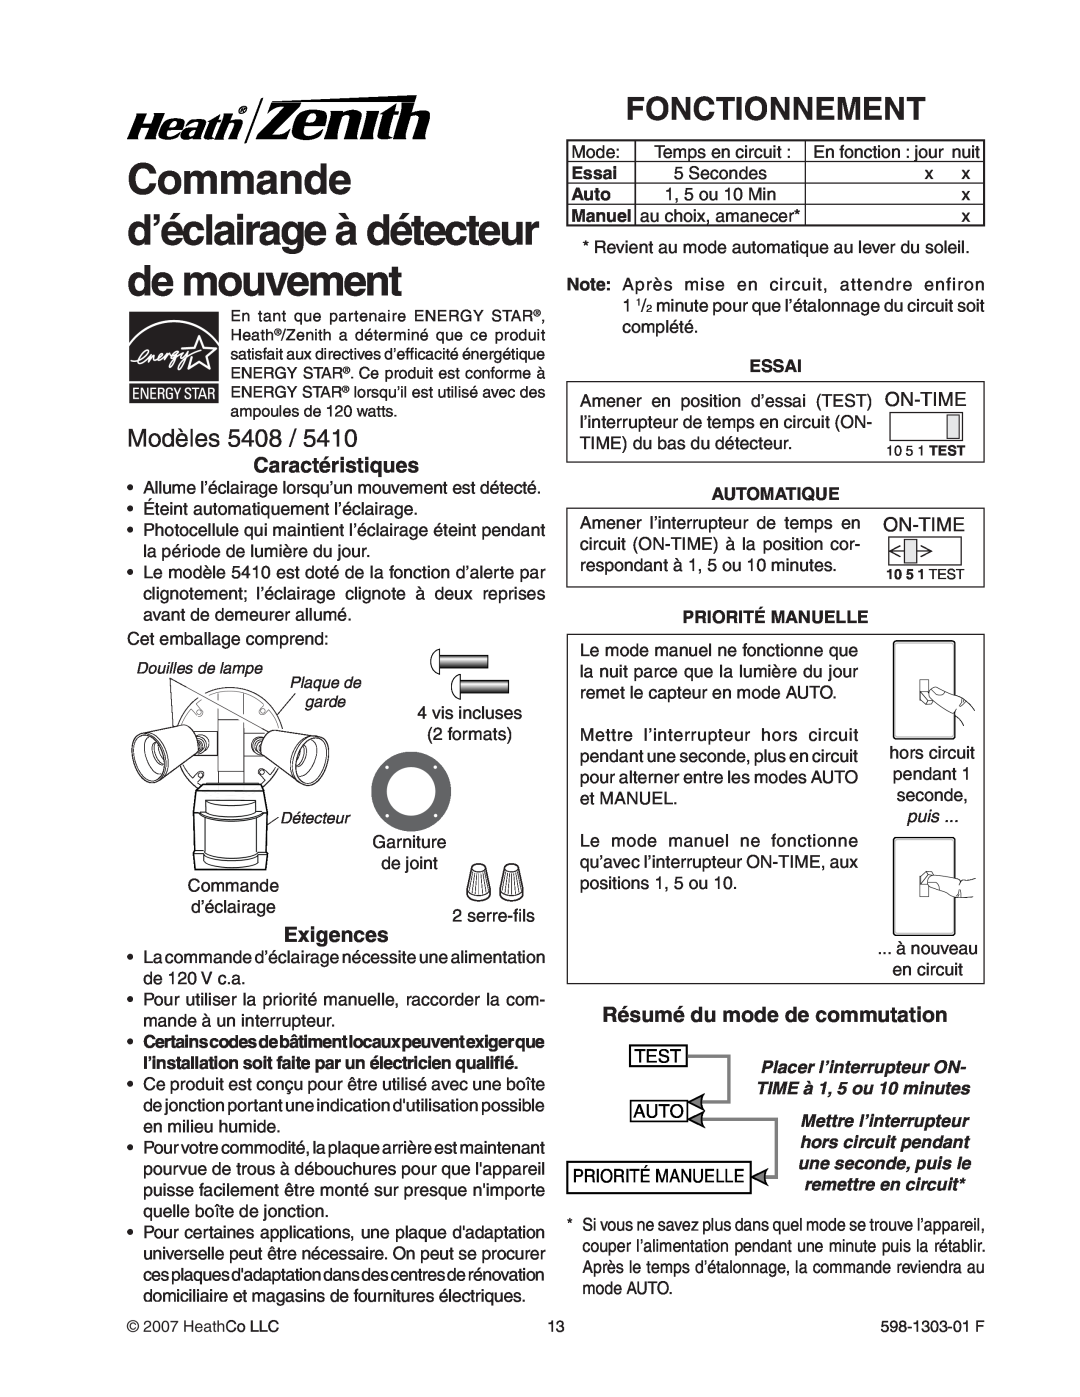 Heath Zenith 5408 / 5410 manual Commande d’éclairage à détecteur de mouvement, Fonctionnement, Modèles, Test, Auto 